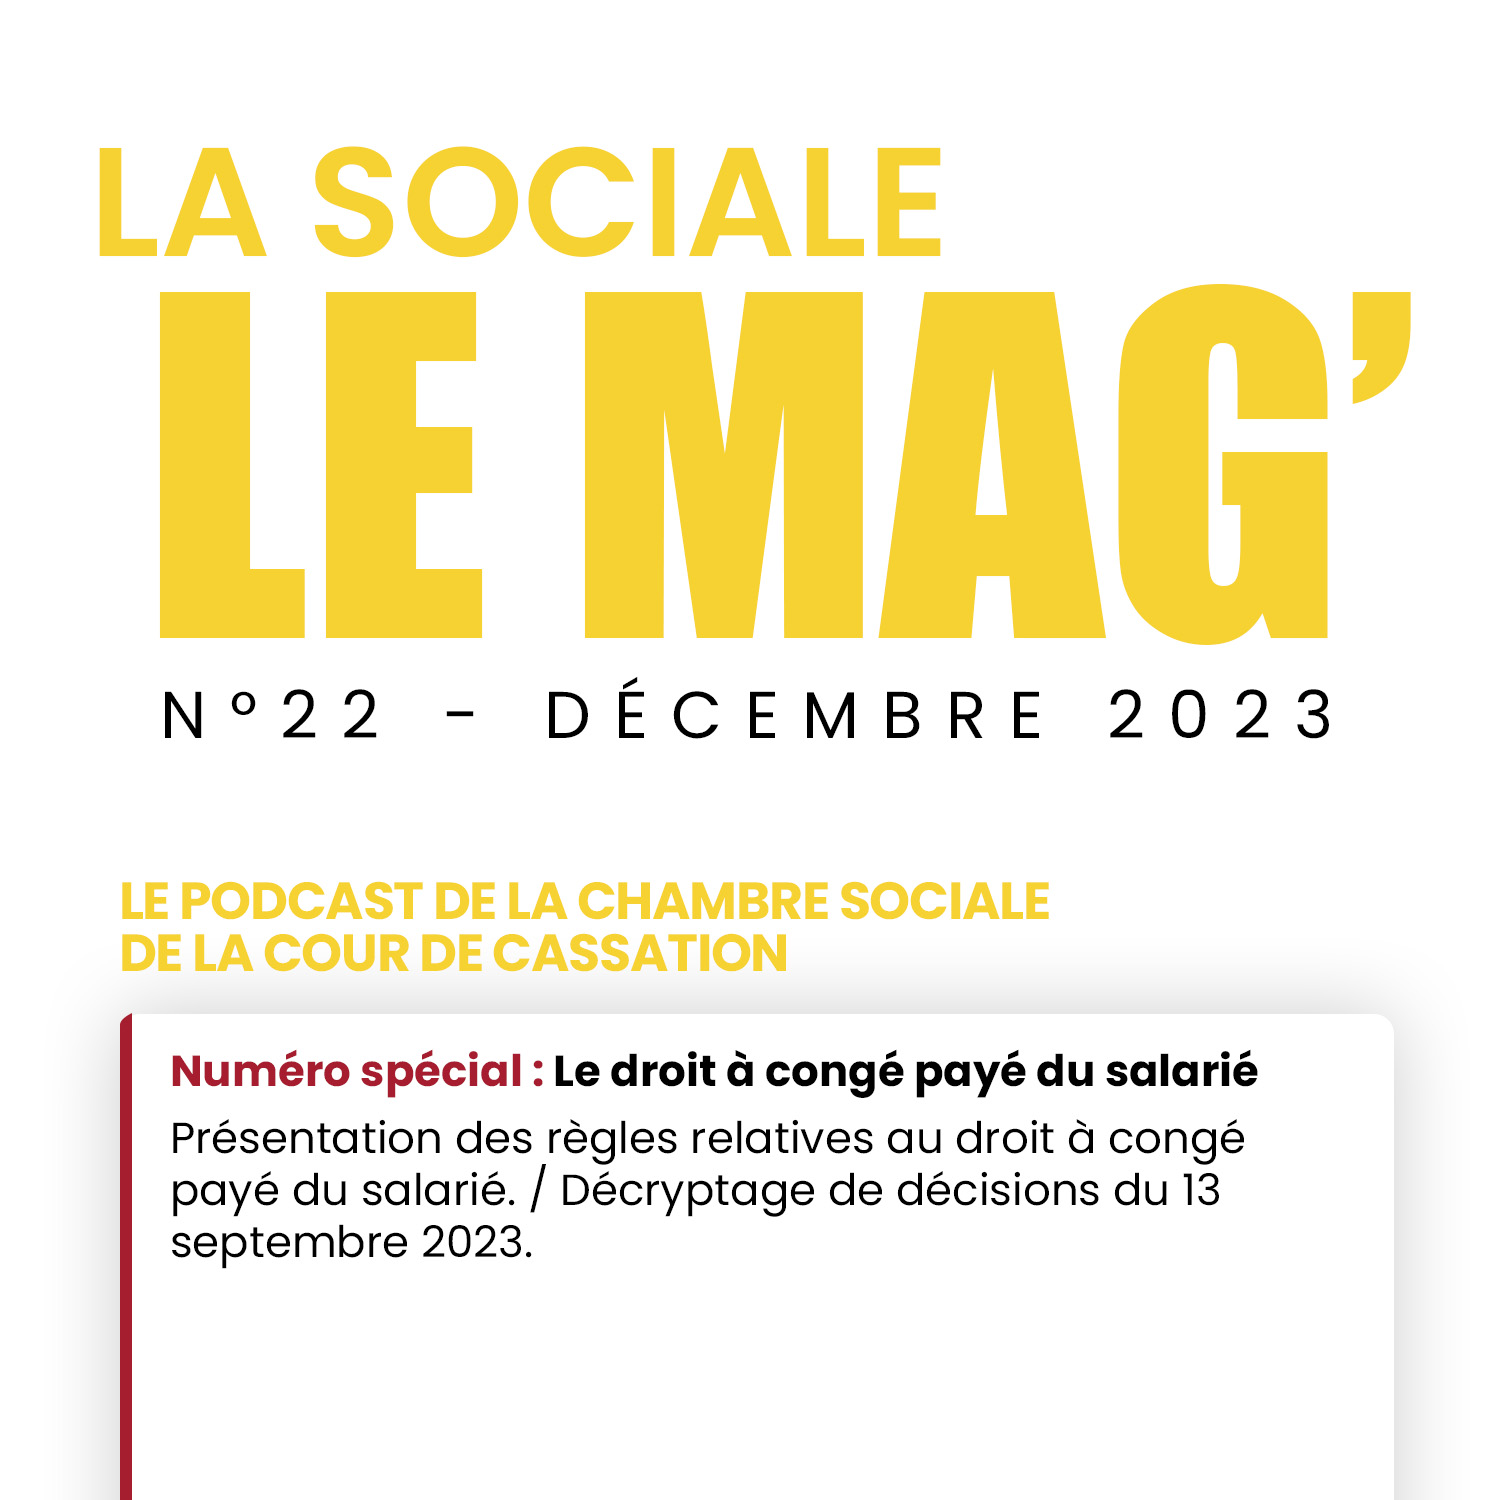 La Sociale Le Mag’ | Le podcast de la chambre sociale de la Cour de cassation #22